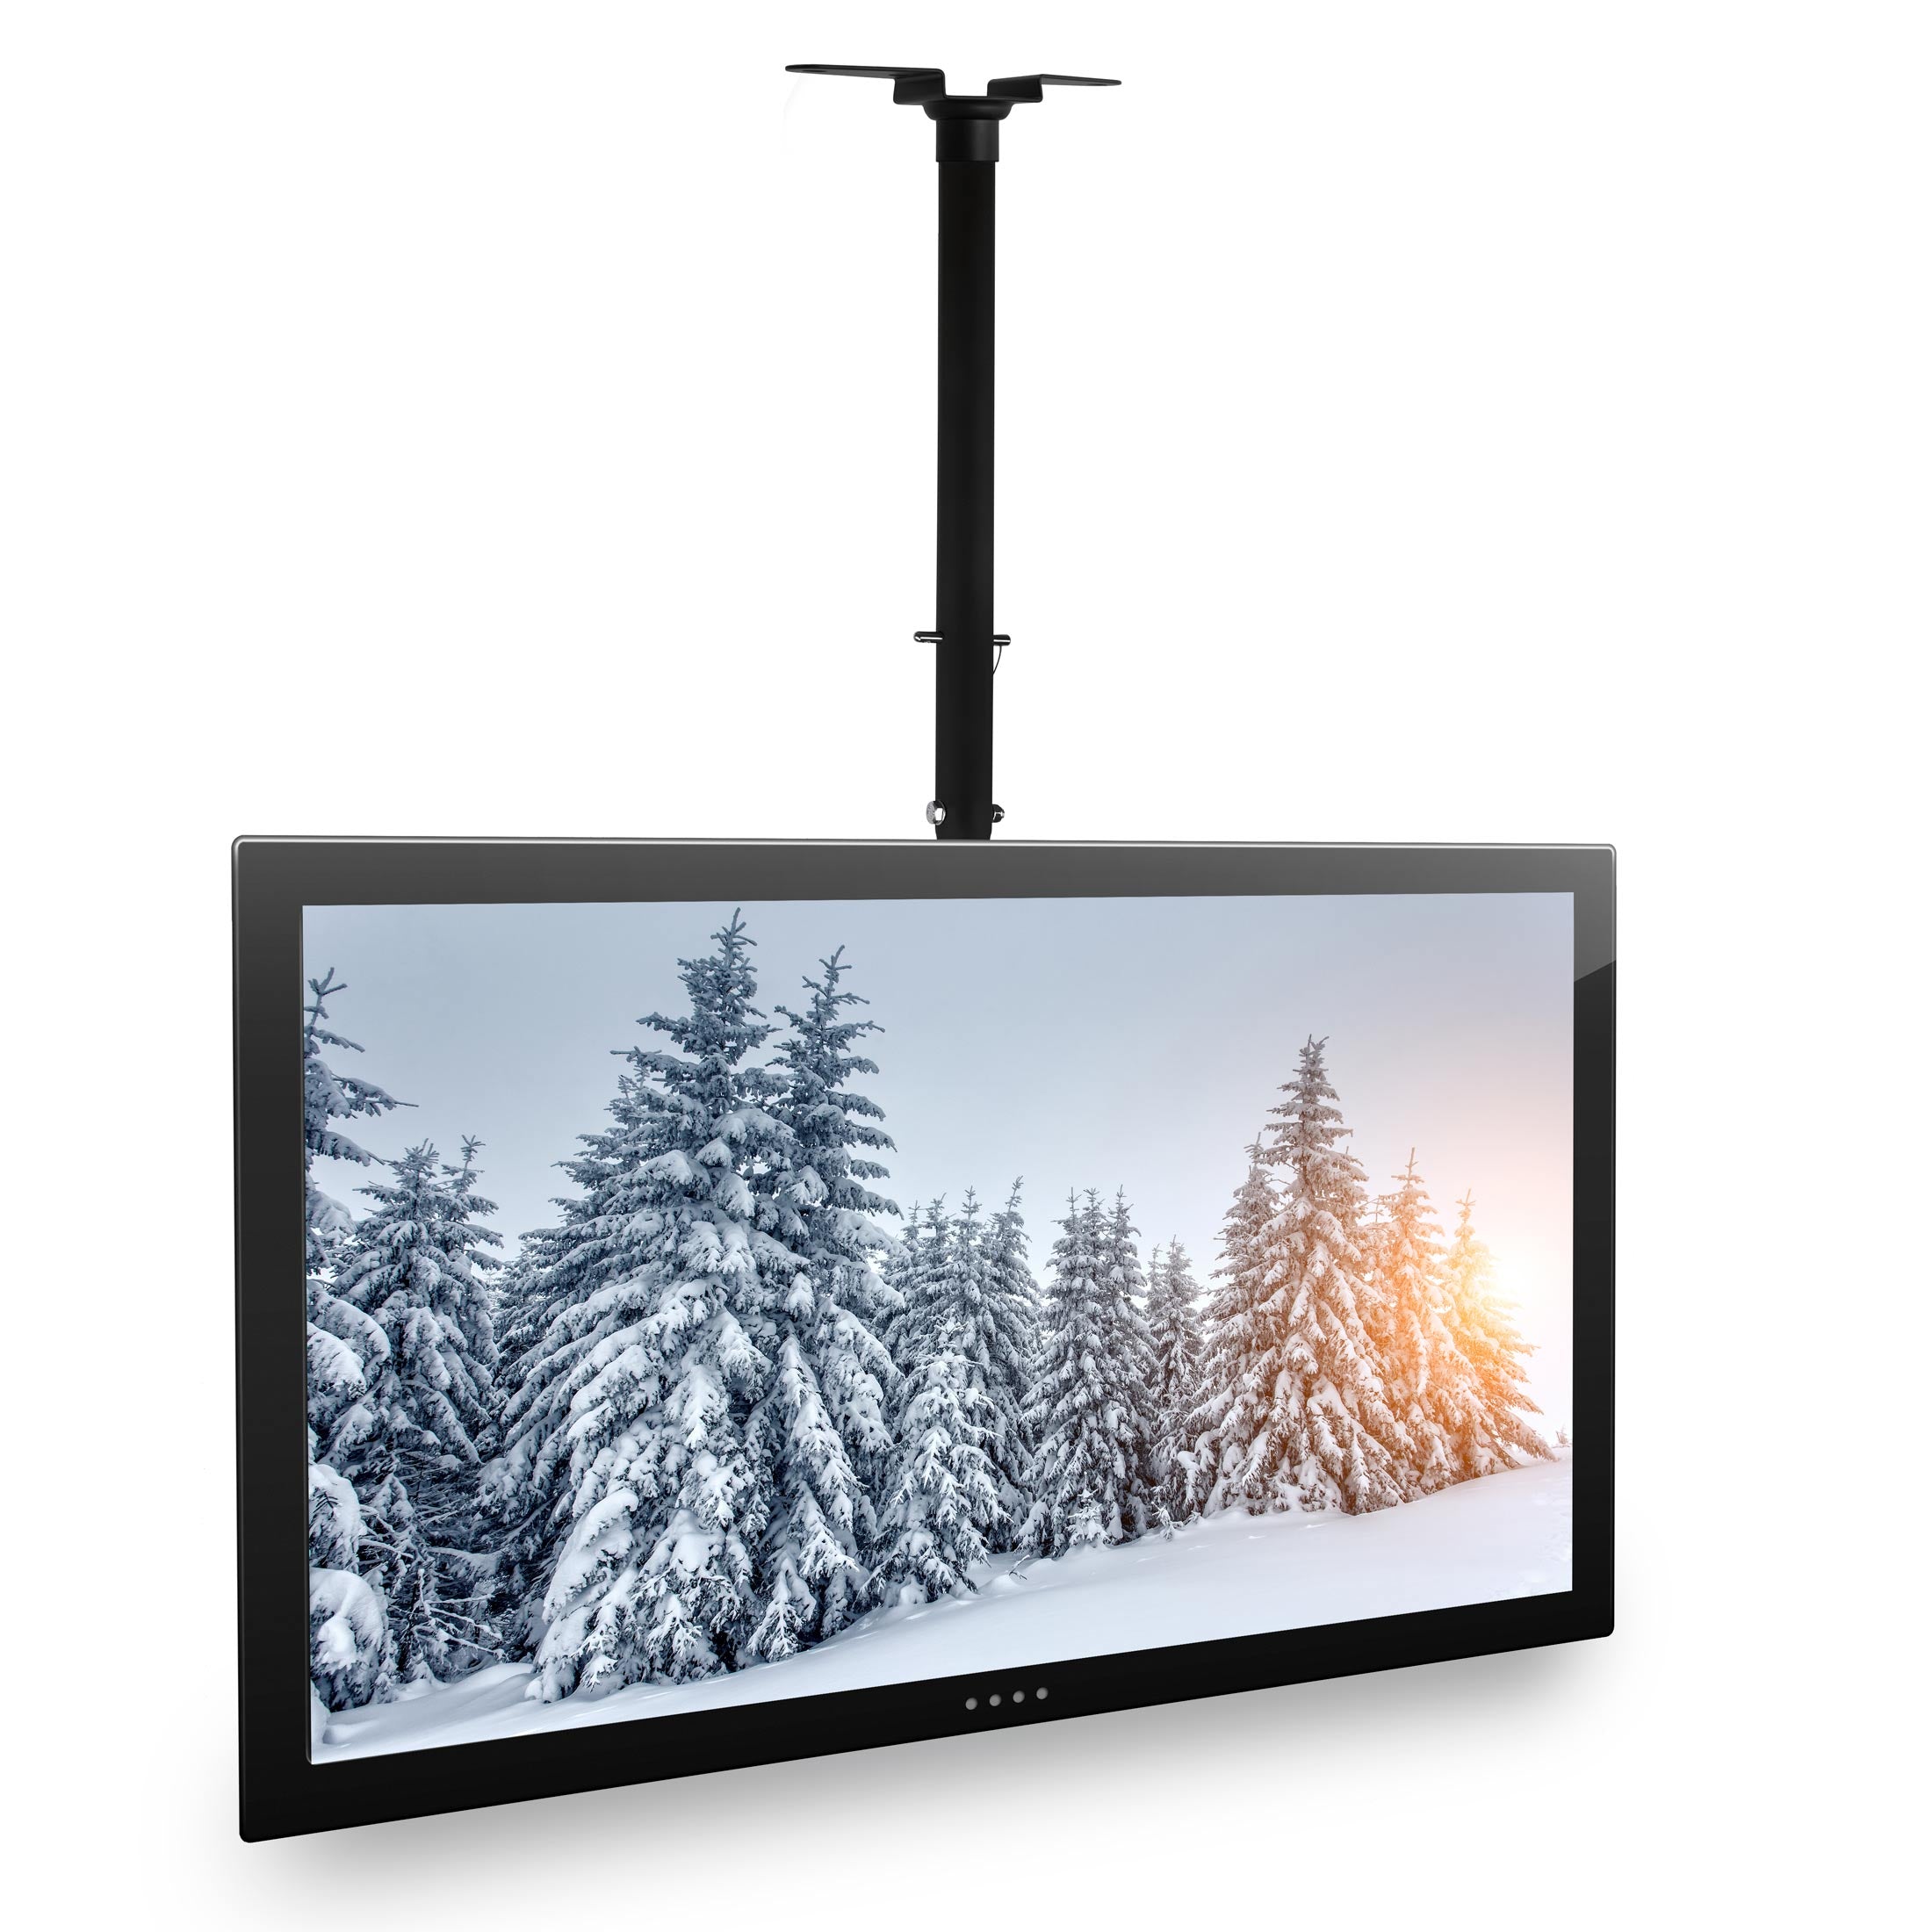 Full-Motion TV Ceiling Mount 42-90” Screens